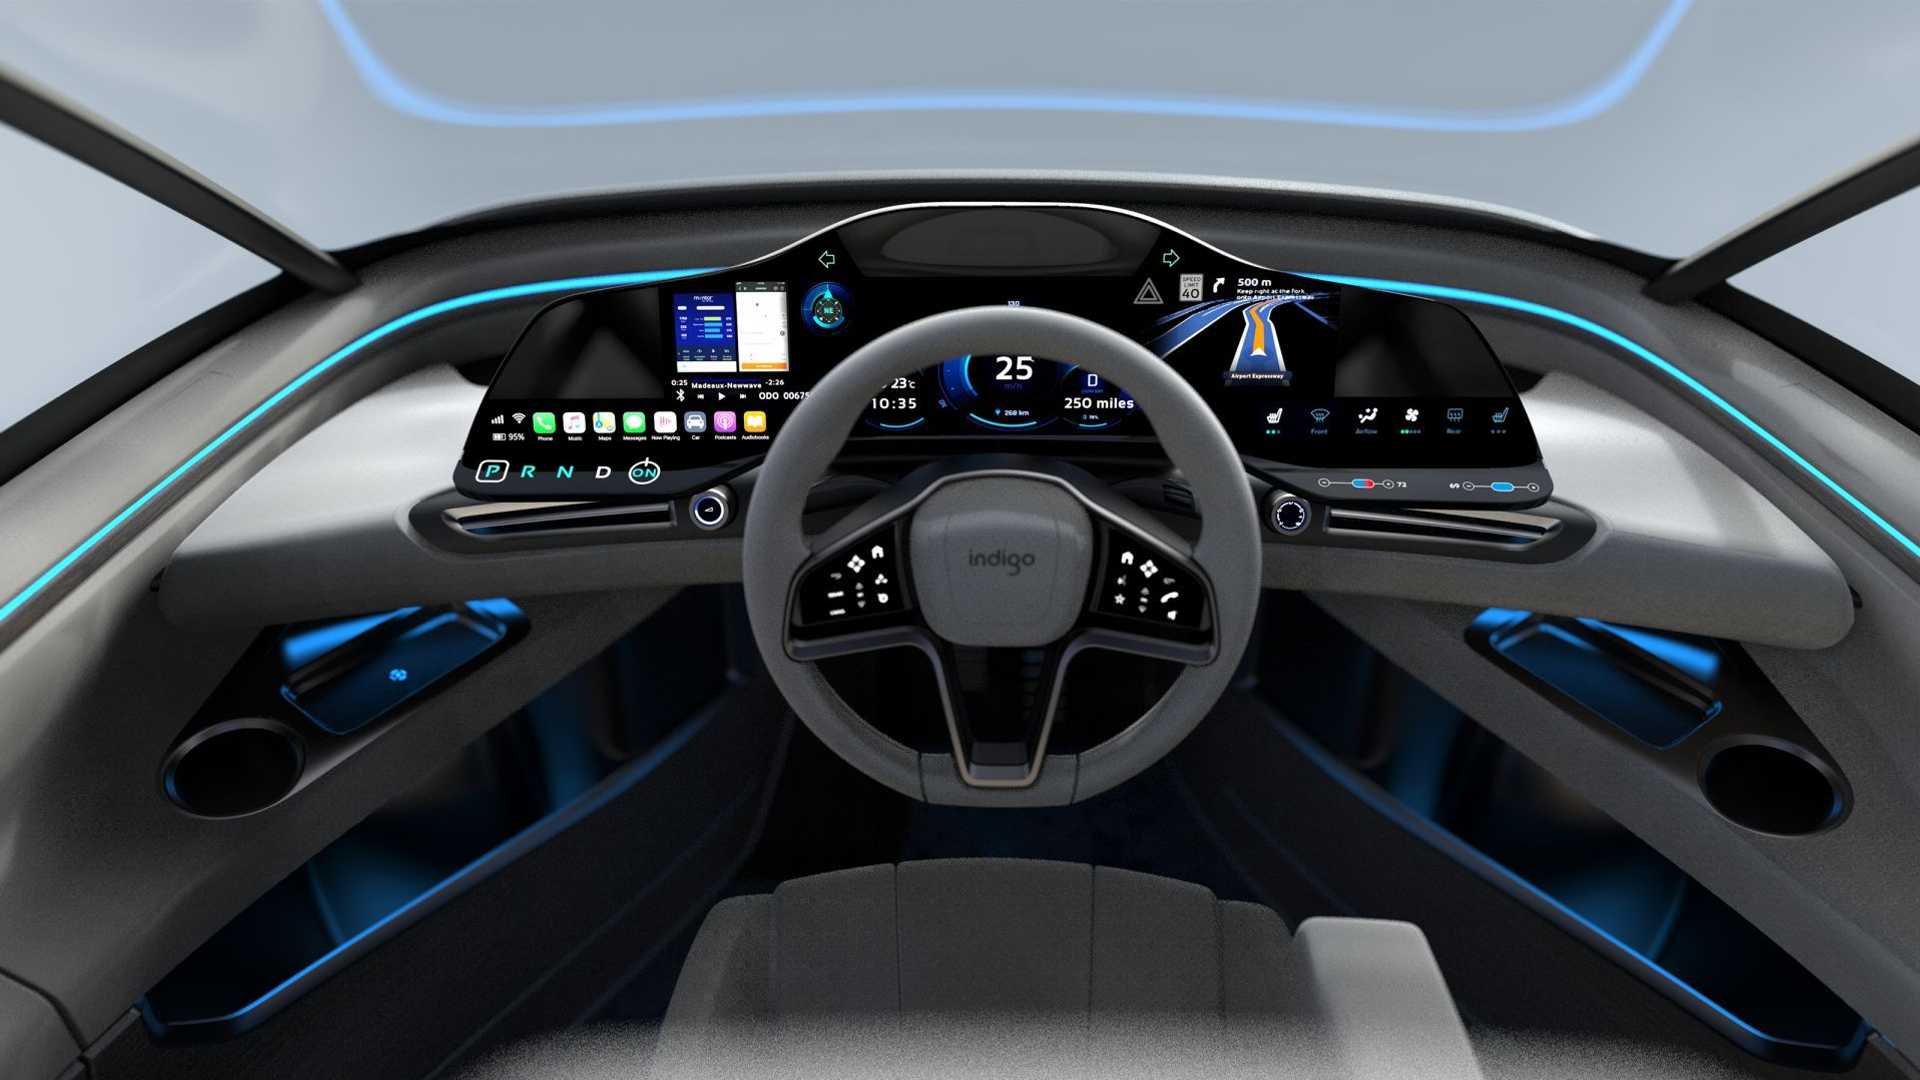 FOTO 2 - Su habitáculo presenta un tecnológico puesto de mandos situado en el centro del coche